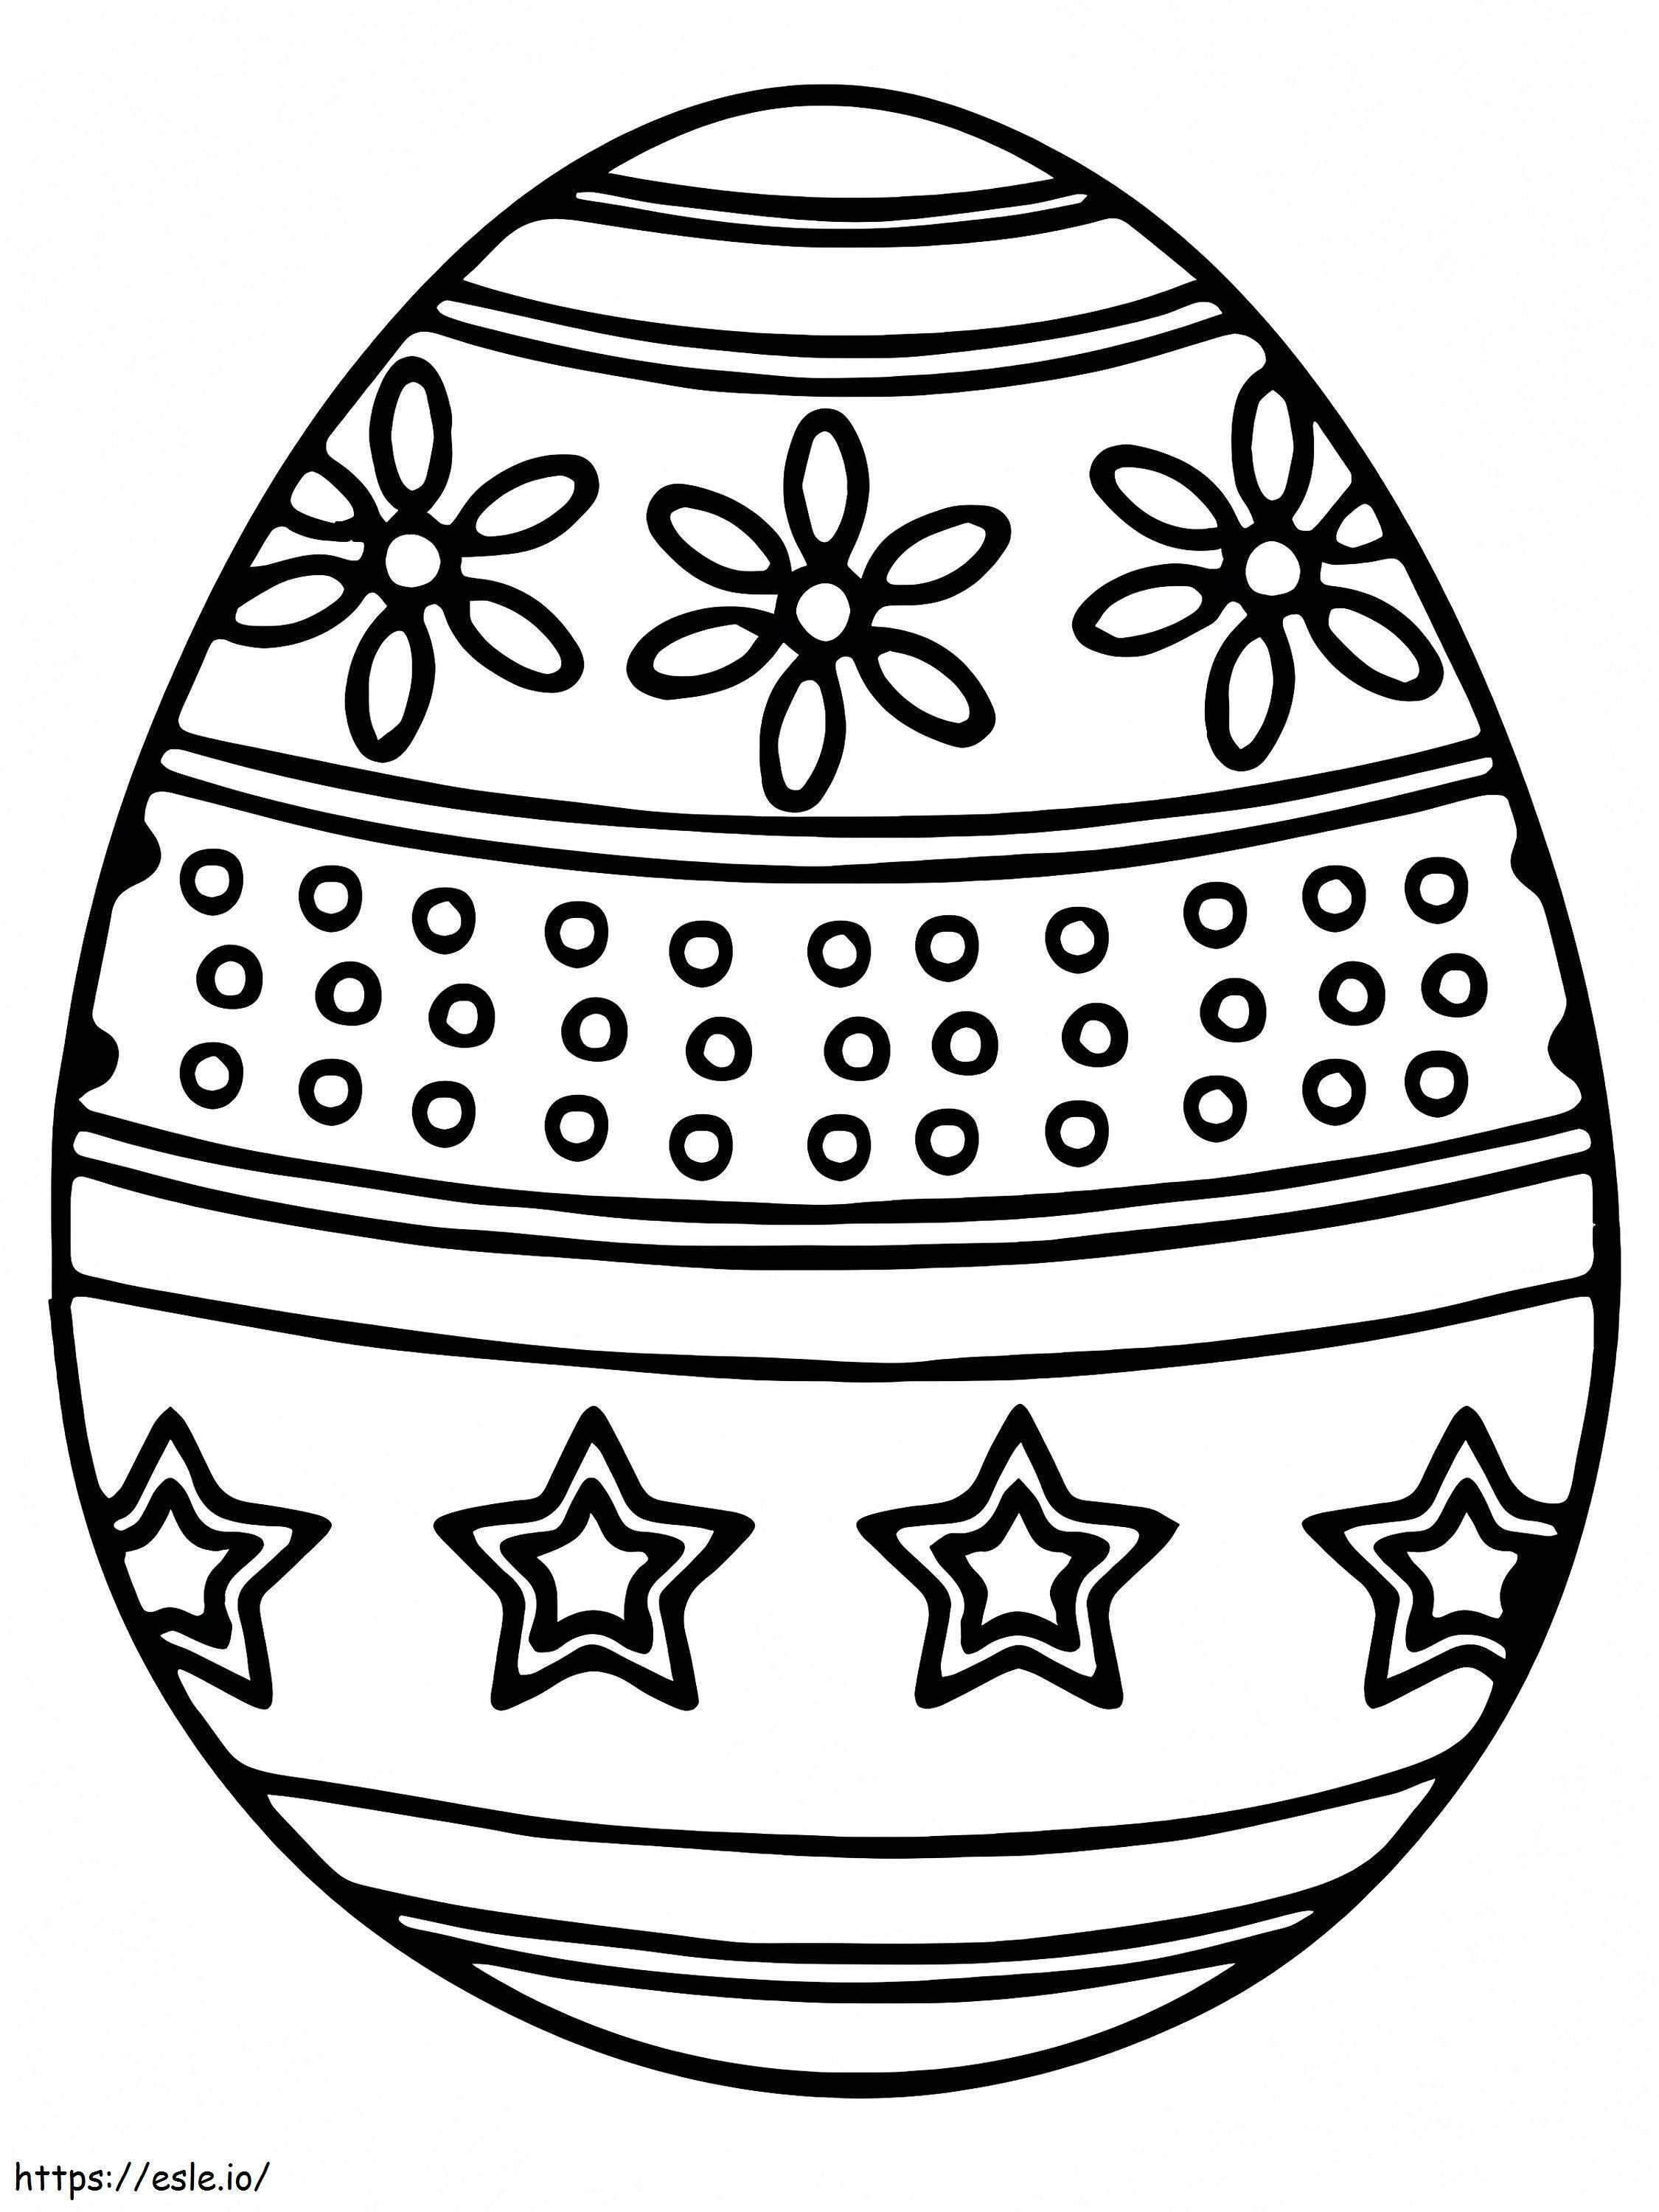 Exquisito huevo de Pascua para colorear